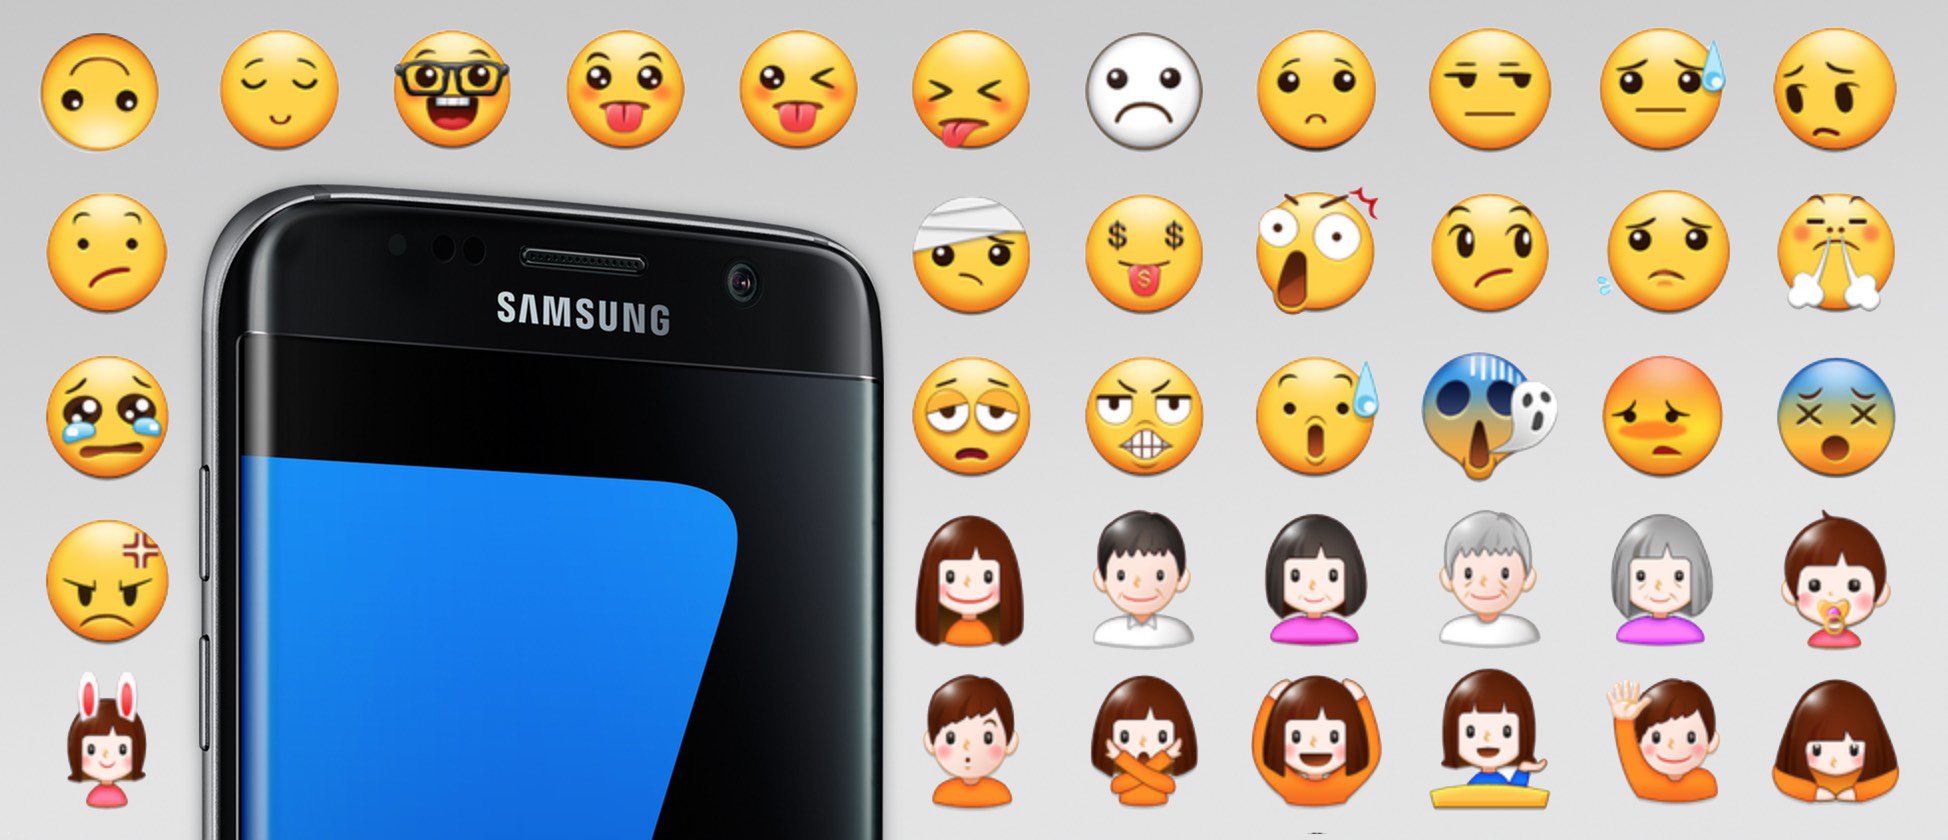 Смартфоны Galaxy S7 получили много новых Emoji в фирменном стиле Samsung.